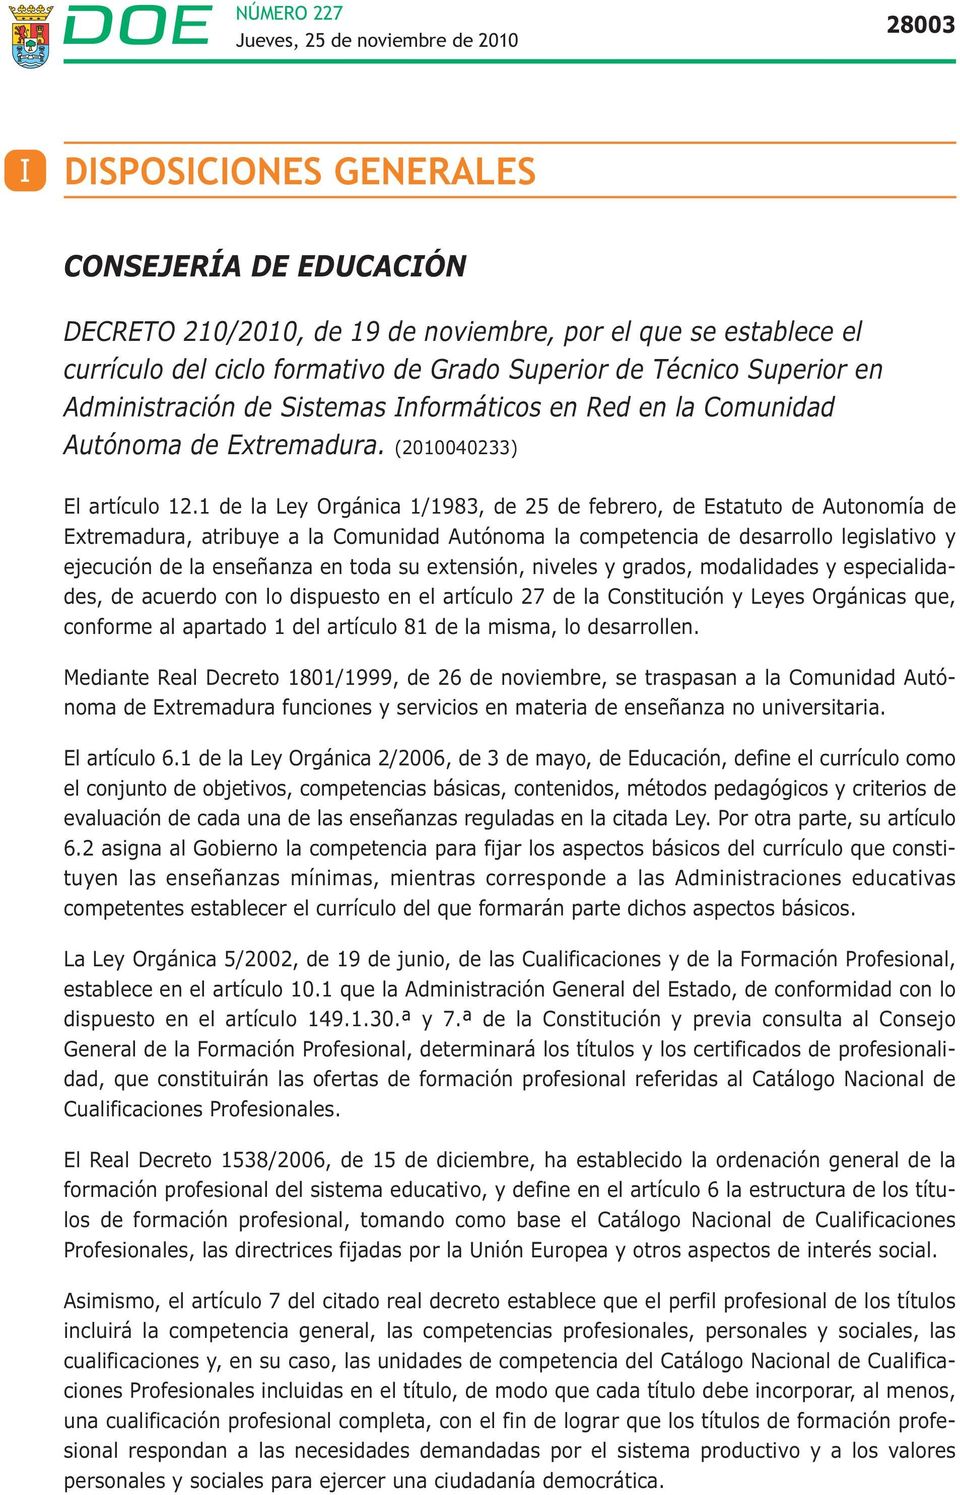 1 de la Ley Orgánica 1/1983, de 25 de febrero, de Estatuto de Autonomía de Extremadura, atribuye a la Comunidad Autónoma la competencia de desarrollo legislativo y ejecución de la enseñanza en toda